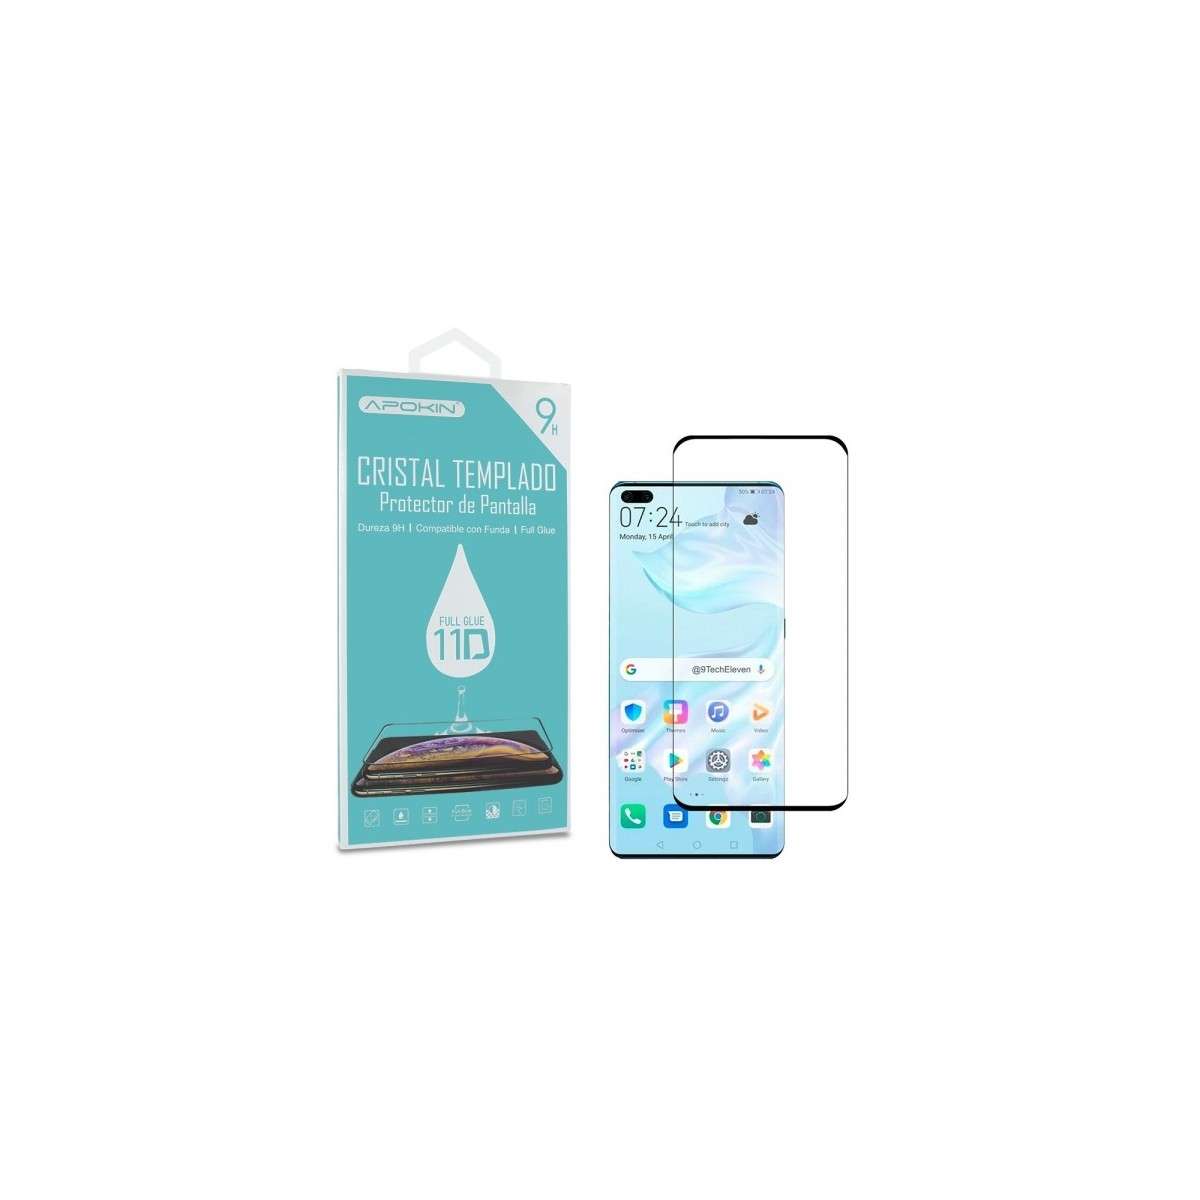 Cristal templado Full Glue 11D Premium iPhone 15 Pro Max Protector de  Pantalla Curvo Negro